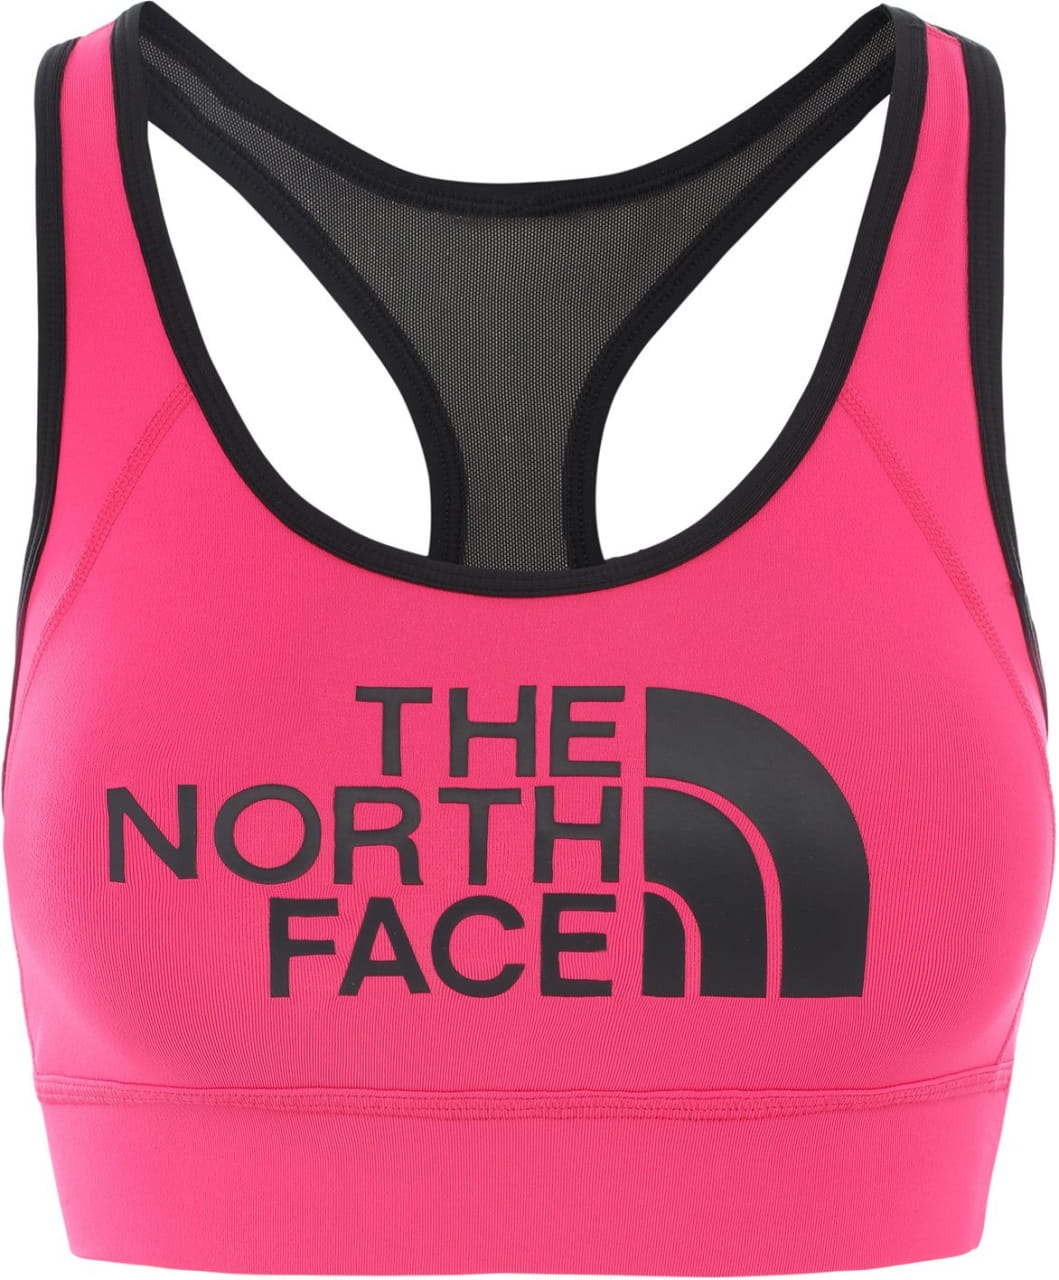 Sportovní podprsenka The North Face Women's Bounce Be Gone Sports Bra